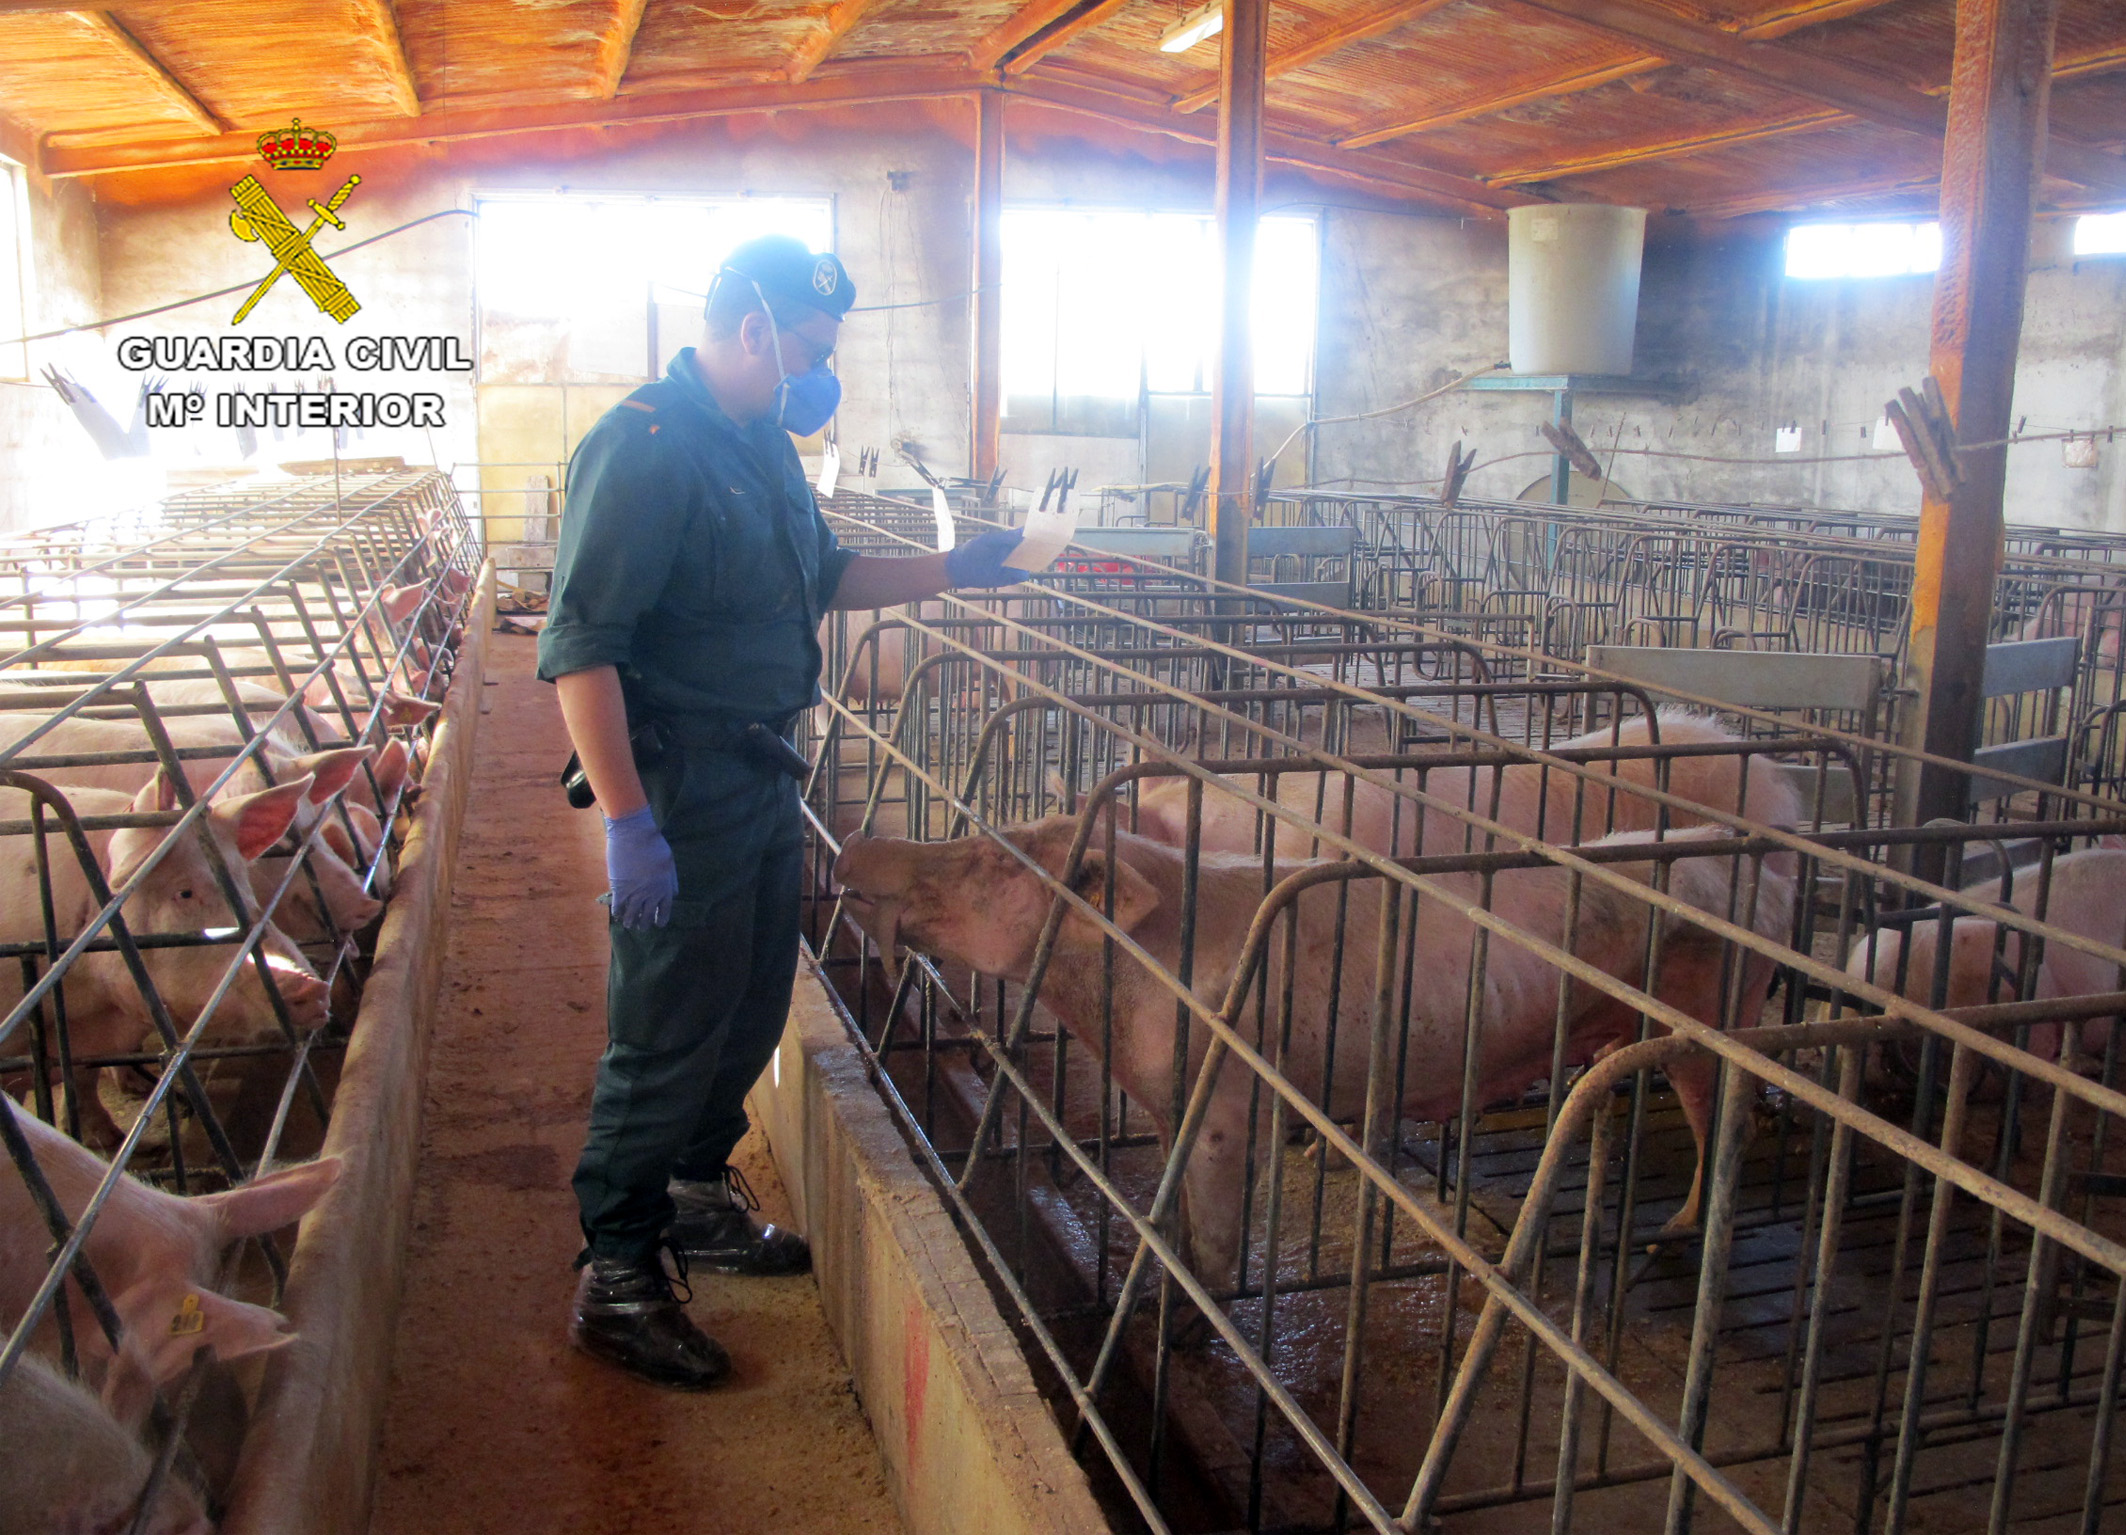 Abandono de más de un centenar de cabezas de ganado porcino de una explotación ganadera, con serias deficiencias higiénico-sanitarias en sus instalaciones. Se calcula la muerte de unas 140 cabezas por falta de agua y comida.